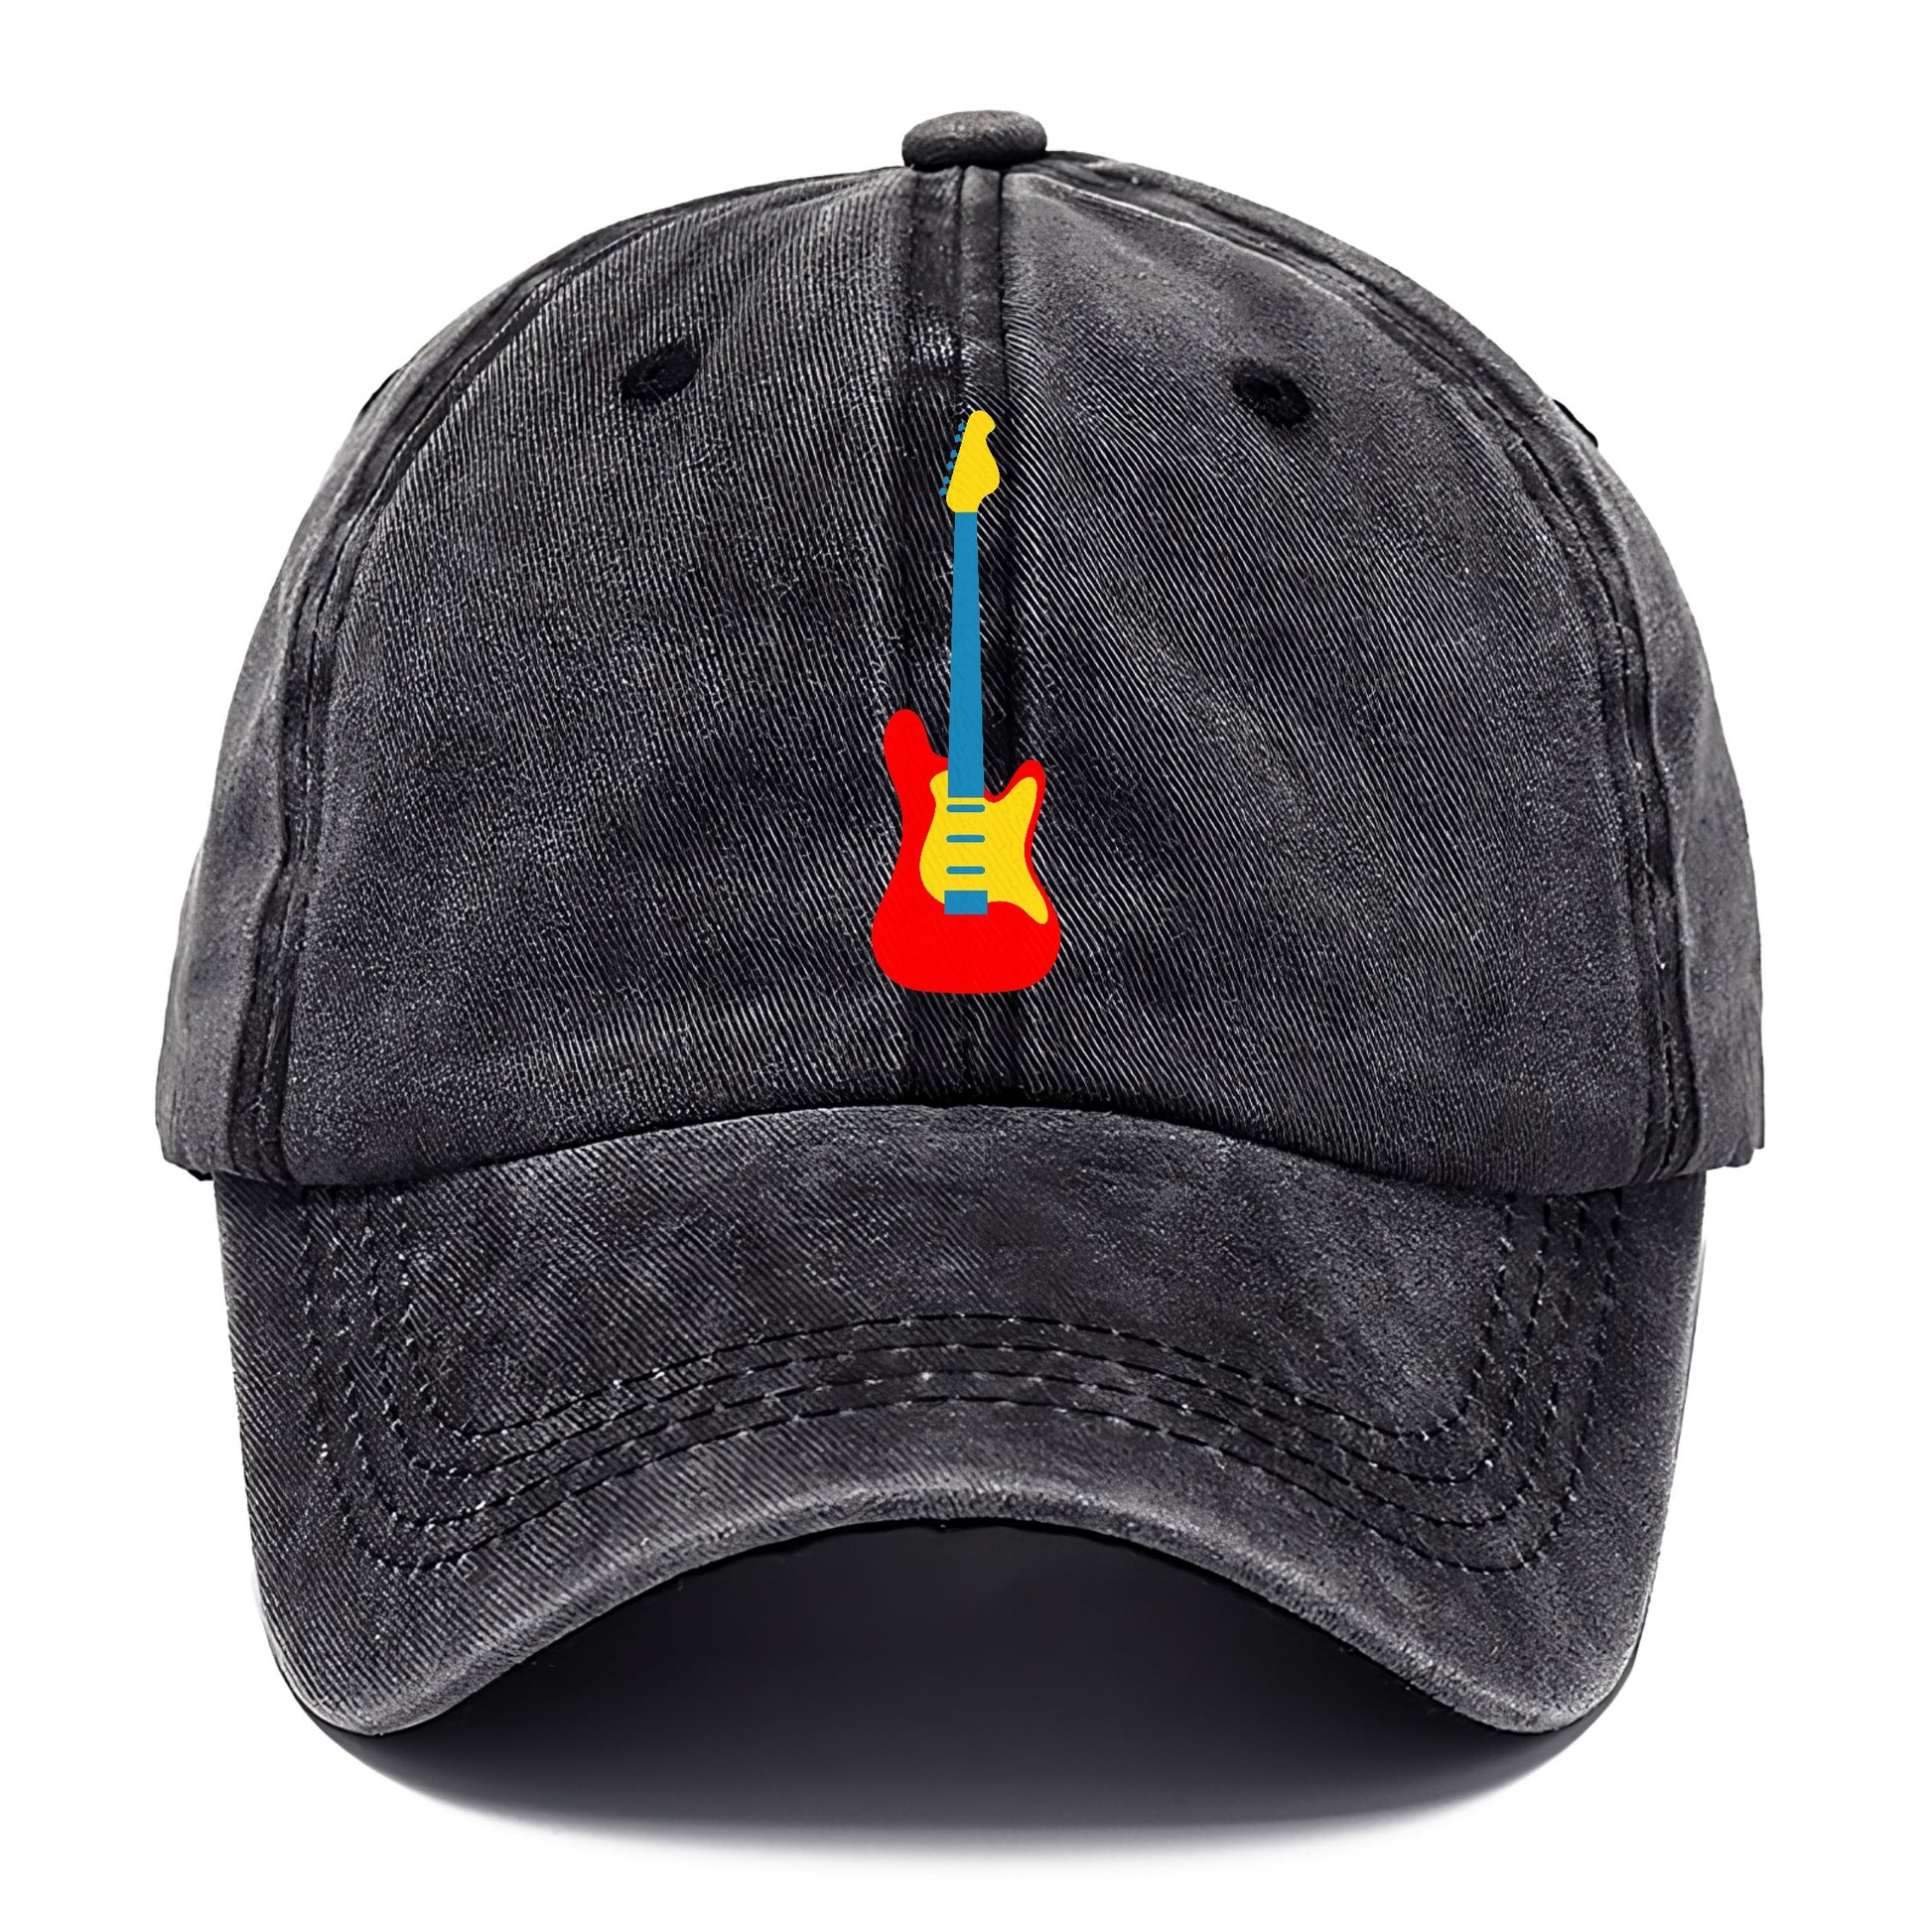 Retro 80s Guitar Red Hat